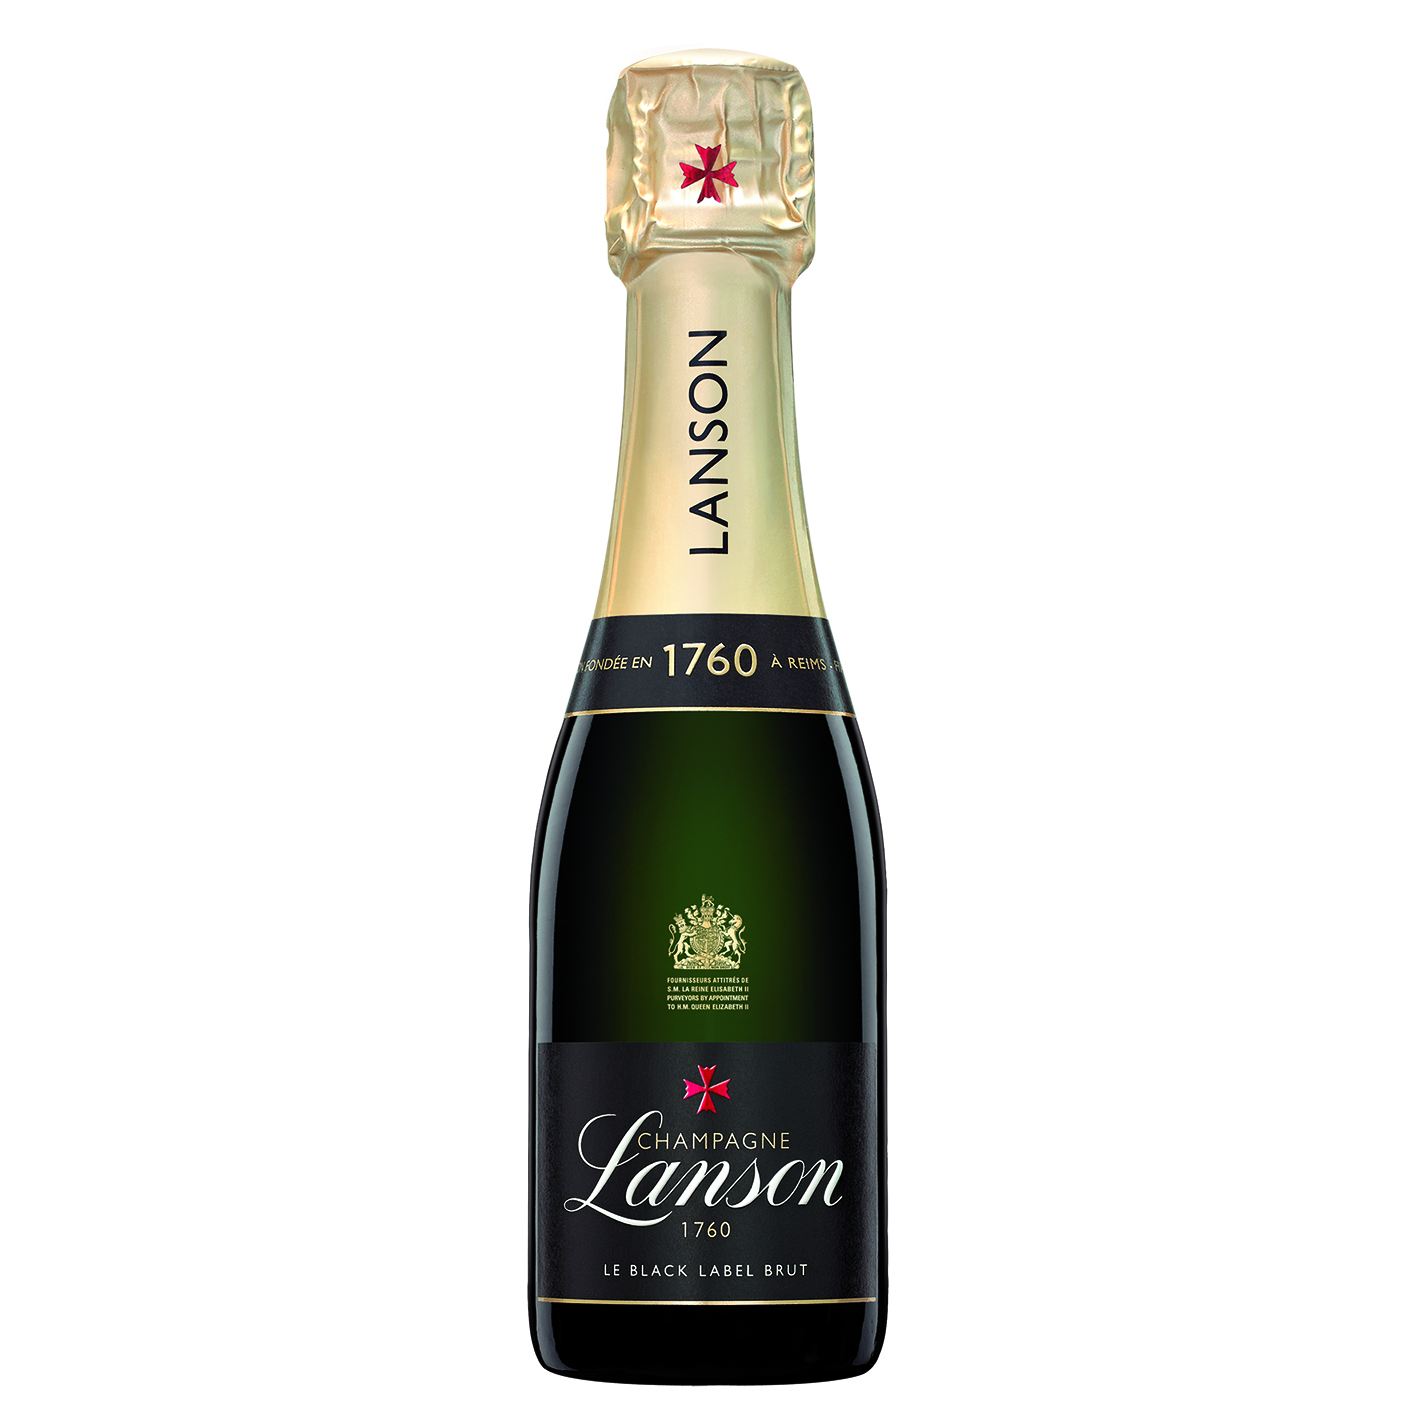 Send Mini Lanson Le Black Label Champagne 20cl Online